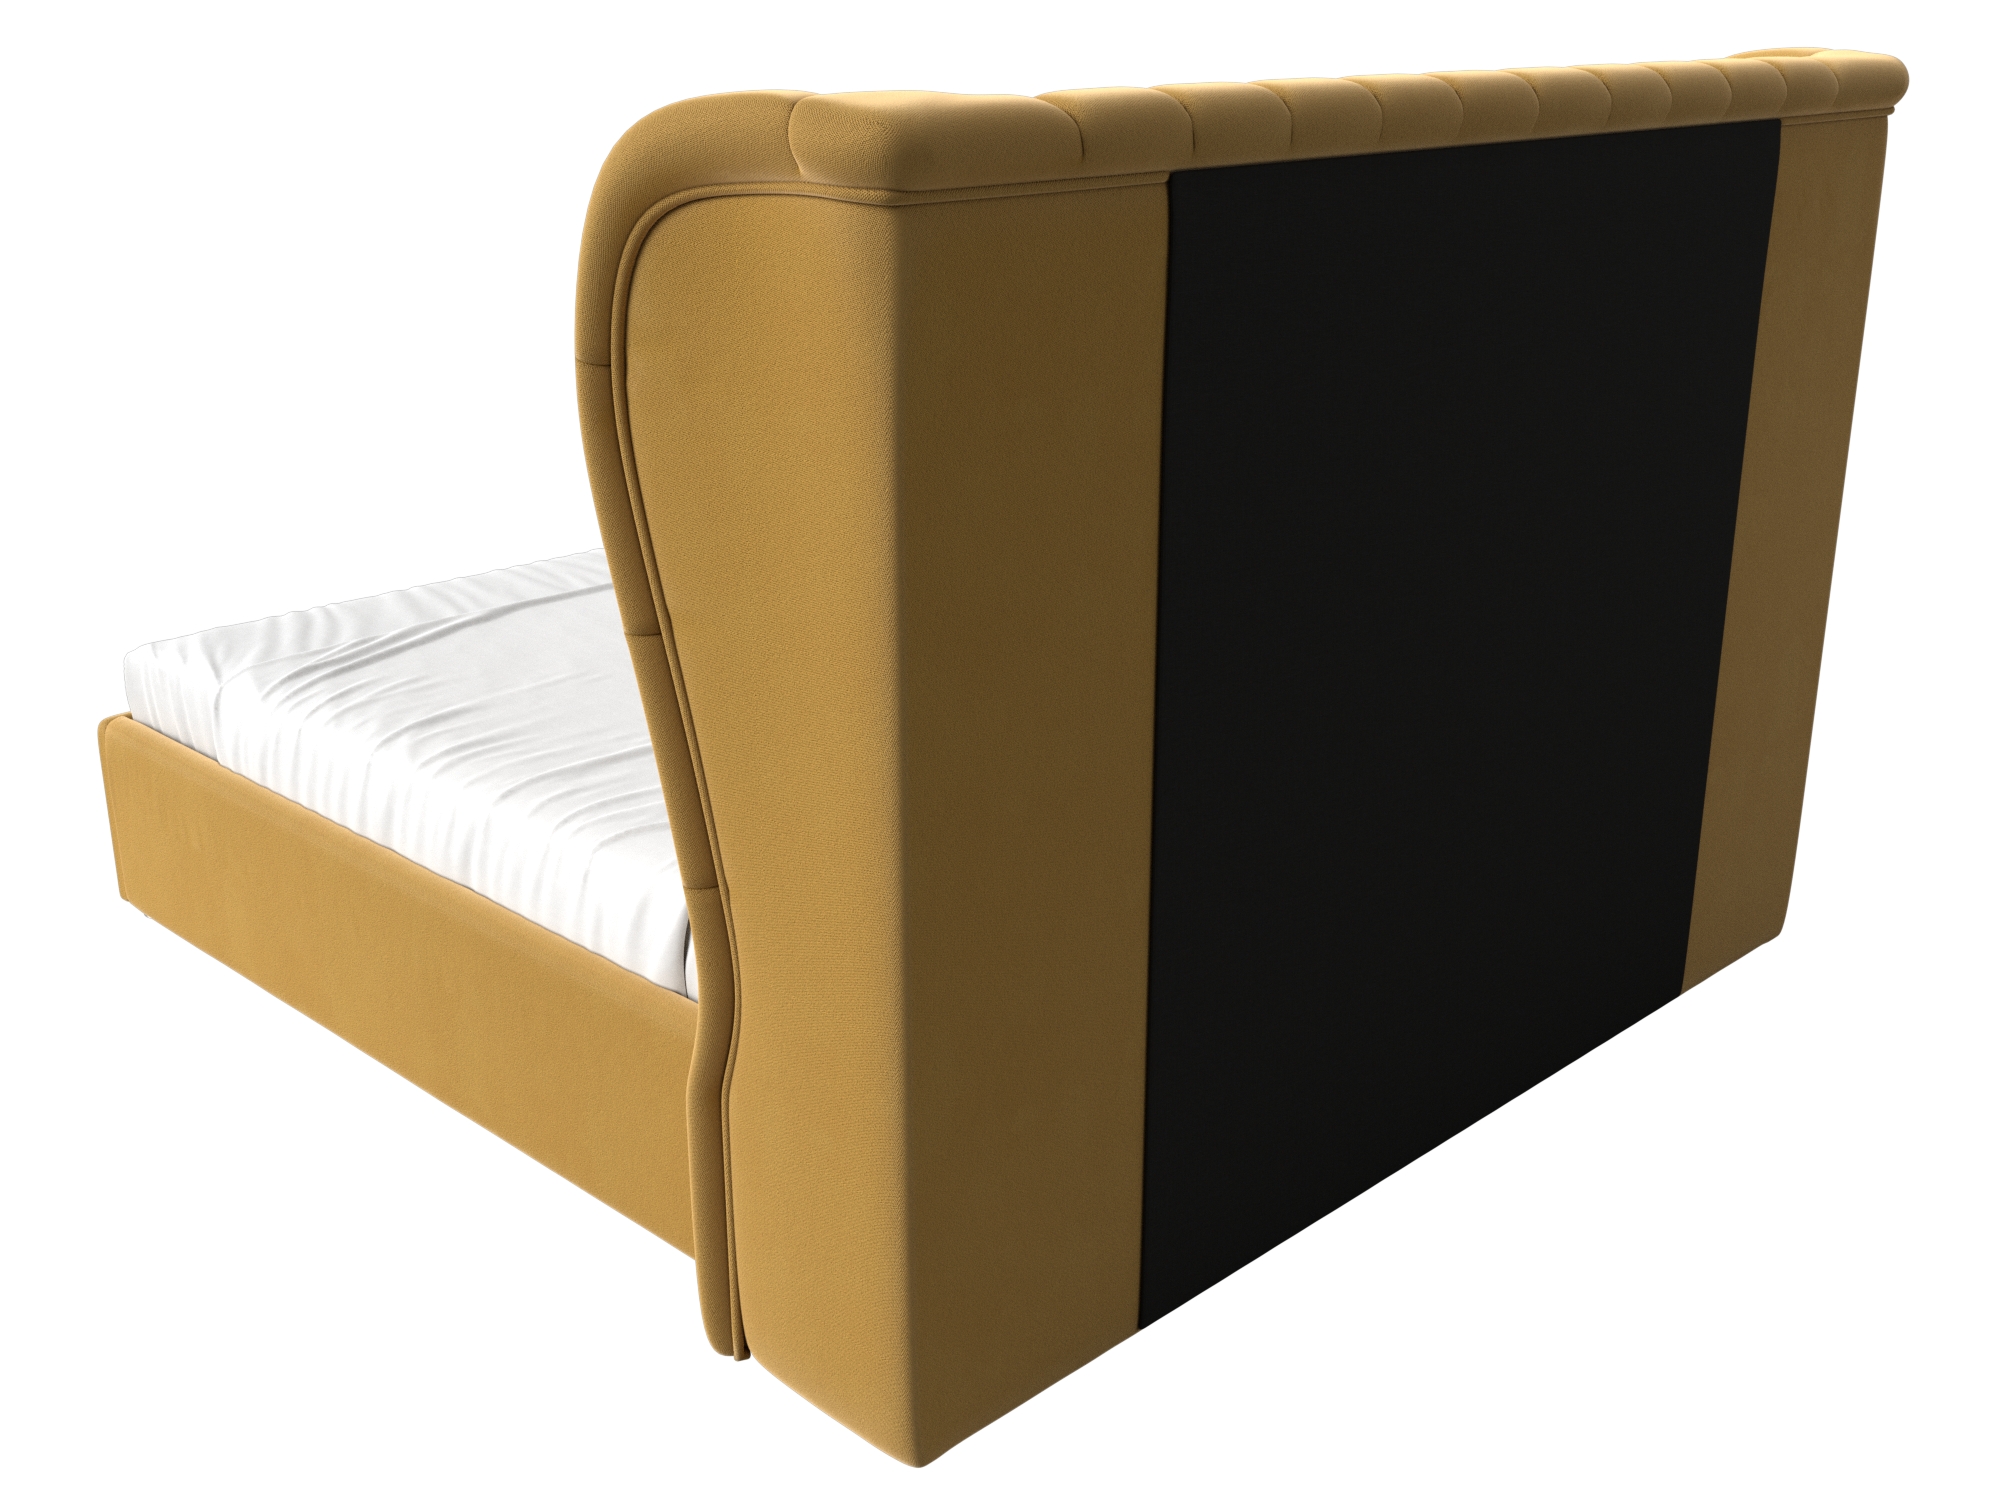 Интерьерная кровать Далия 180 (Желтый)